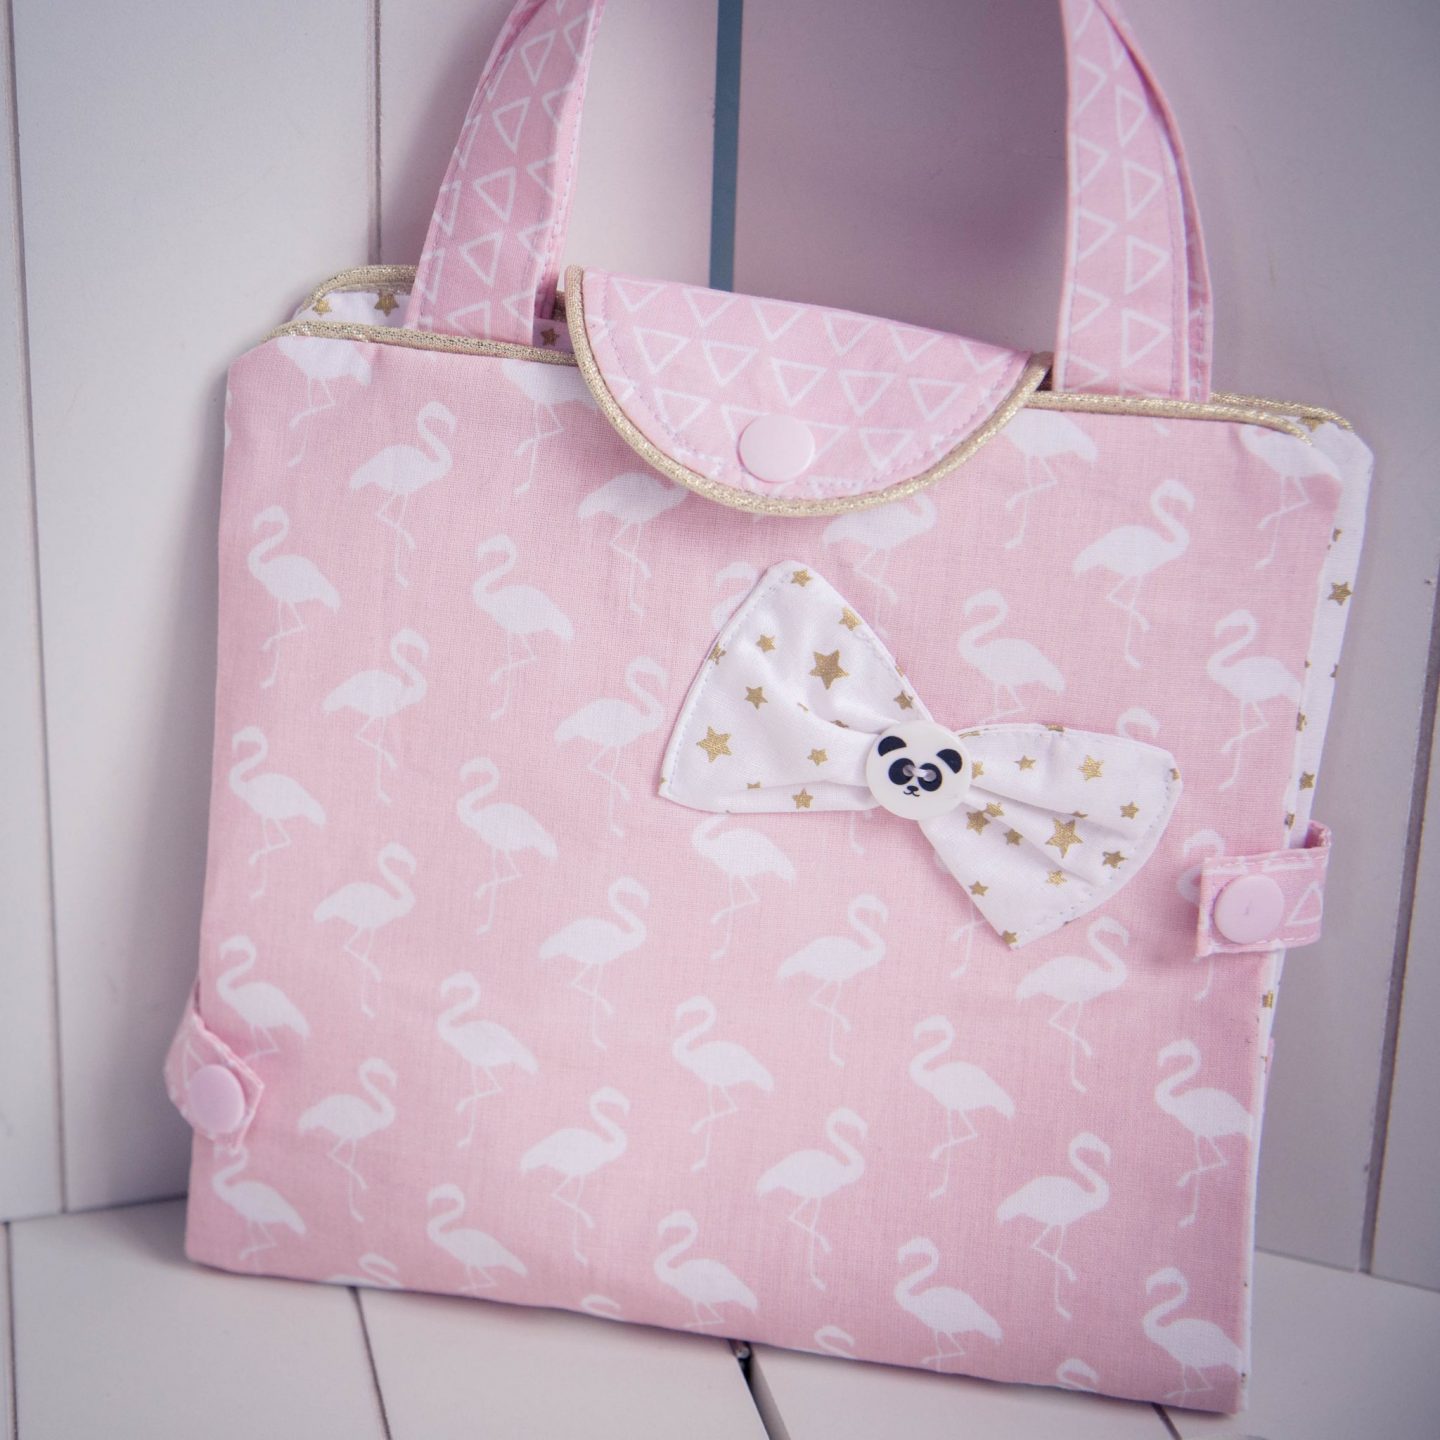 Le kit couture mini sac de beauté MIMY - Icone Girly/ pois fond rose pâle -  Dodynette